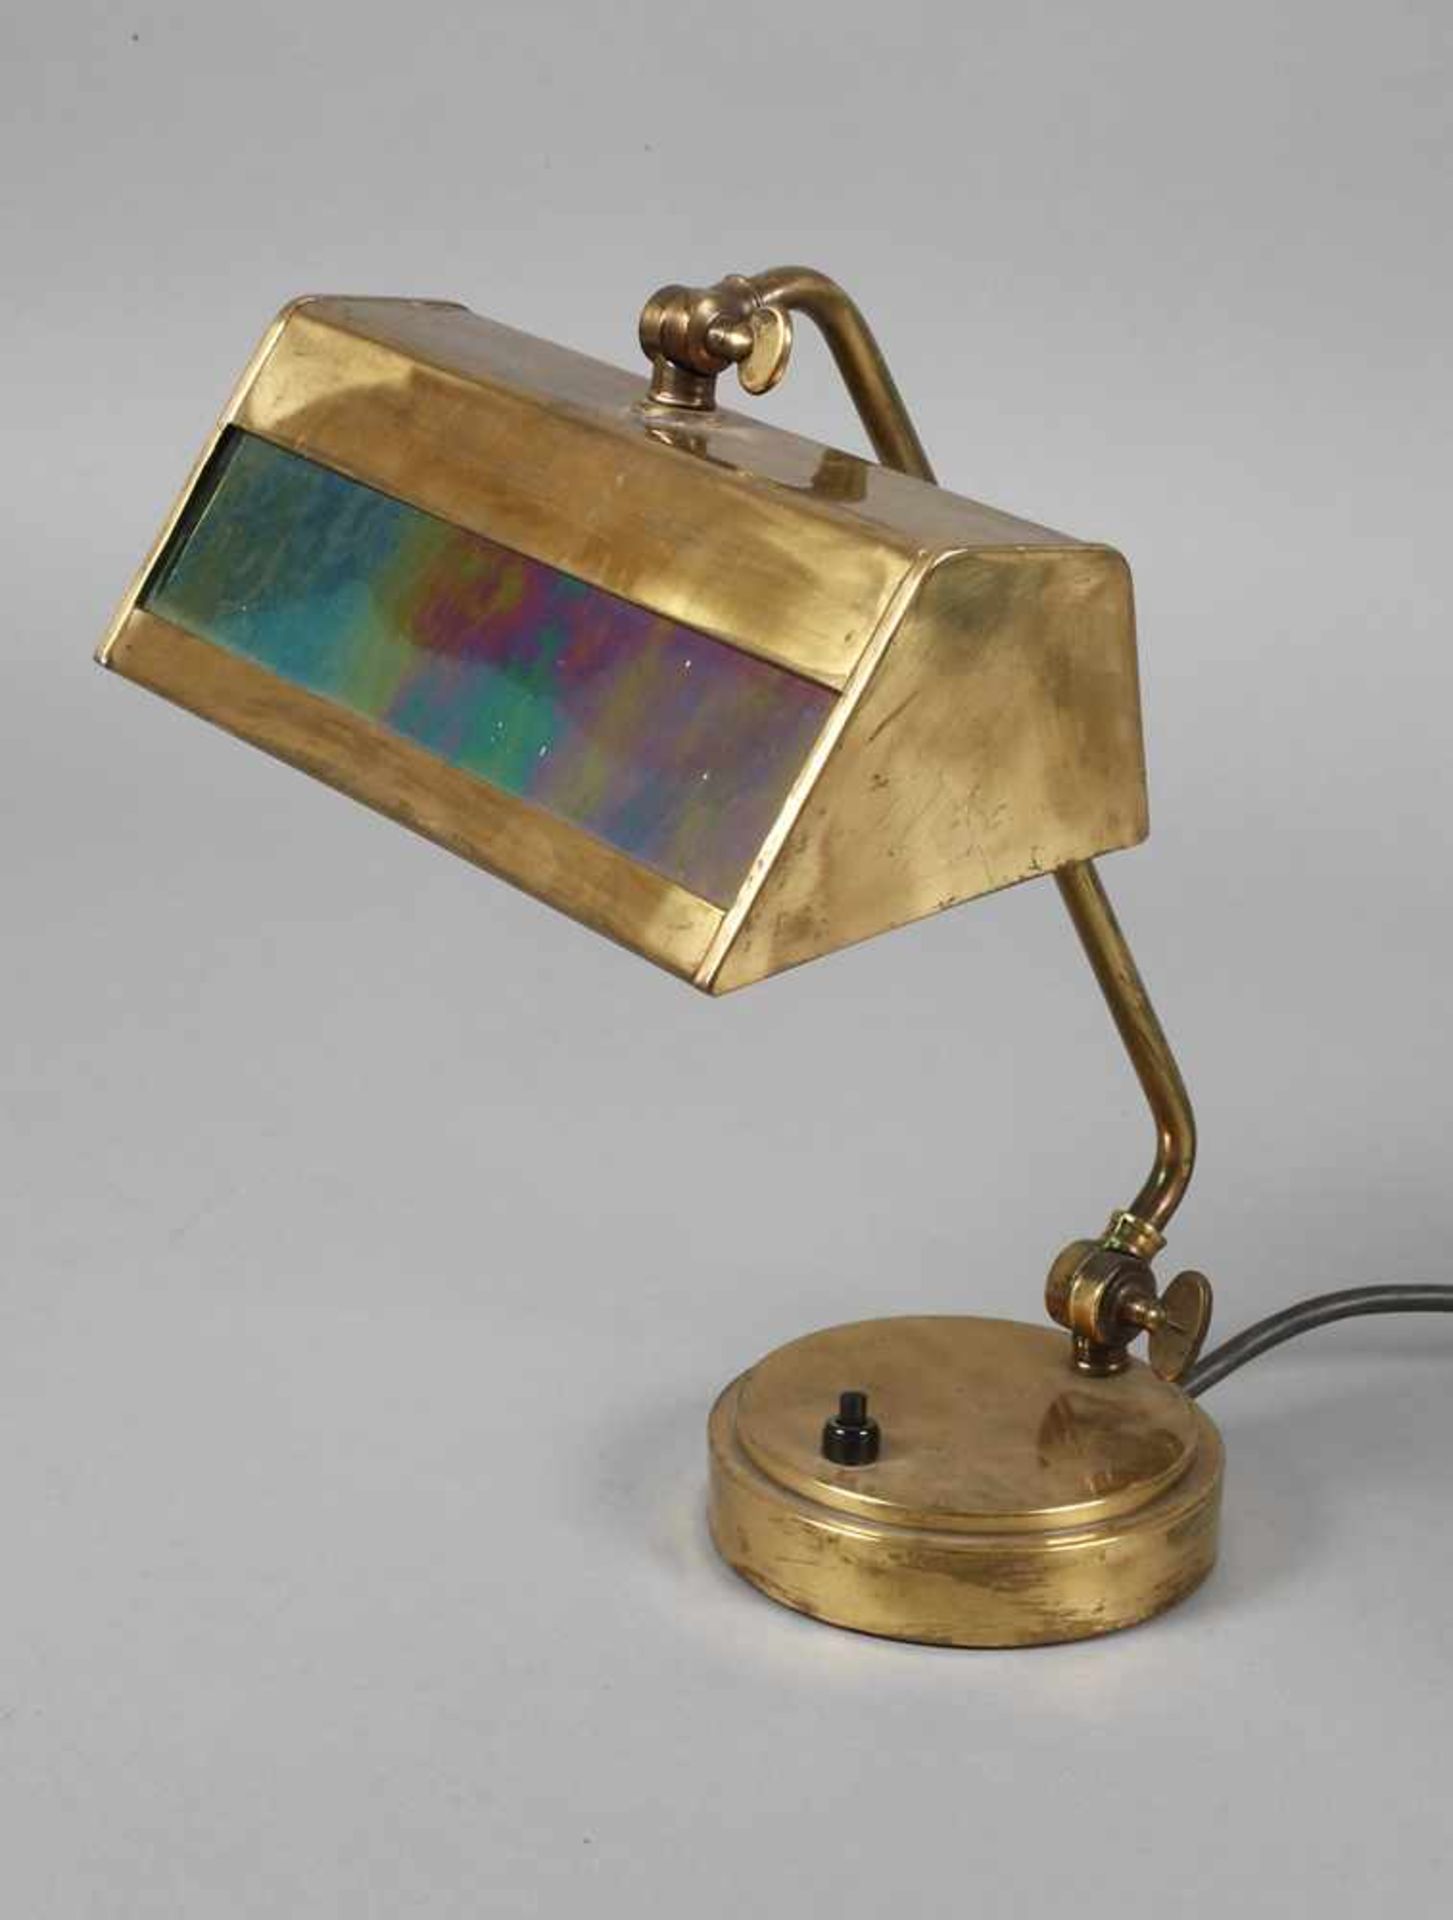 Schreibtischlampeum 1910, ungemarkt, Messing getrieben, beschwerter Rundfuß mit neigbarem